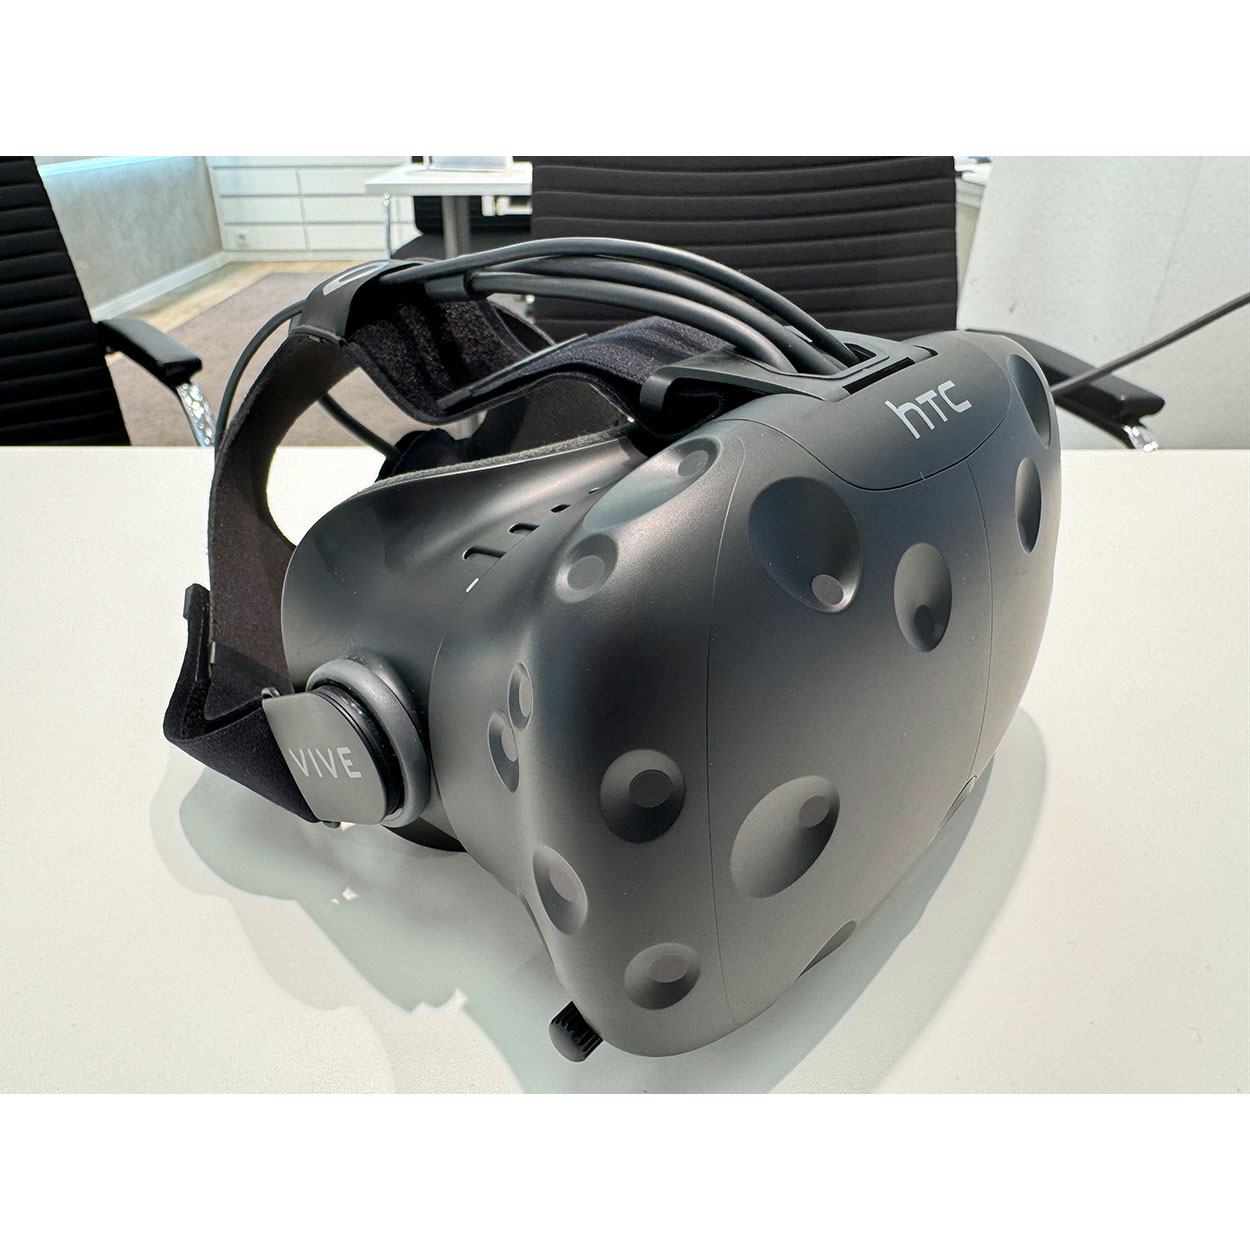 Sehstärkeneinsatz für HTC VIVE (VR-Brille)